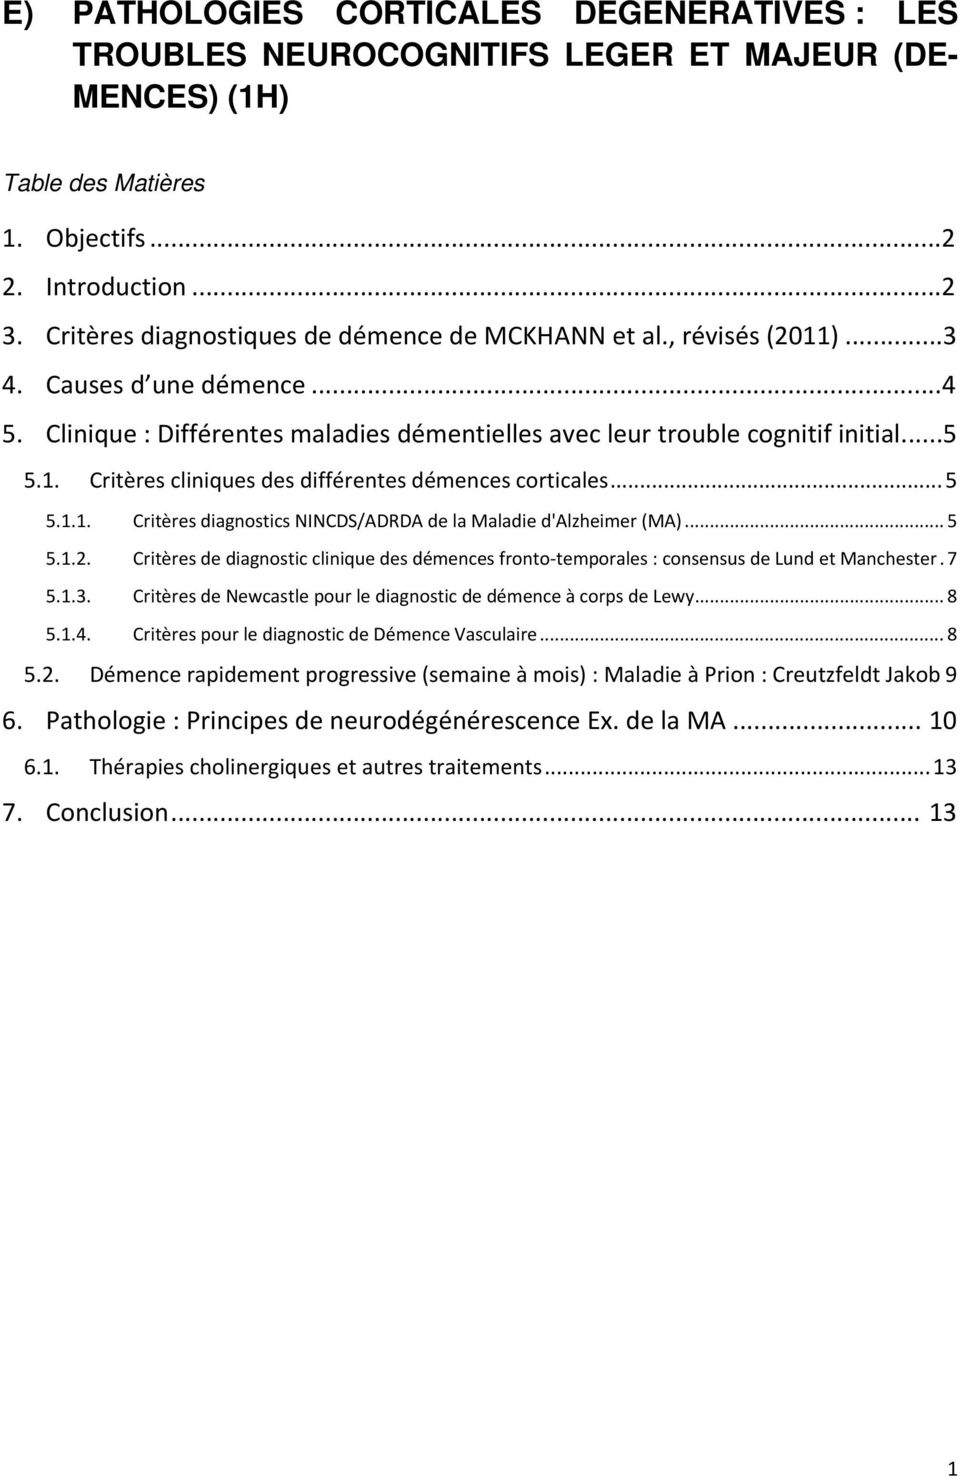 .. 5 5.1.1. Critères diagnostics NINCDS/ADRDA de la Maladie d'alzheimer (MA)... 5 5.1.2. Critères de diagnostic clinique des démences fronto temporales : consensus de Lund et Manchester. 7 5.1.3.